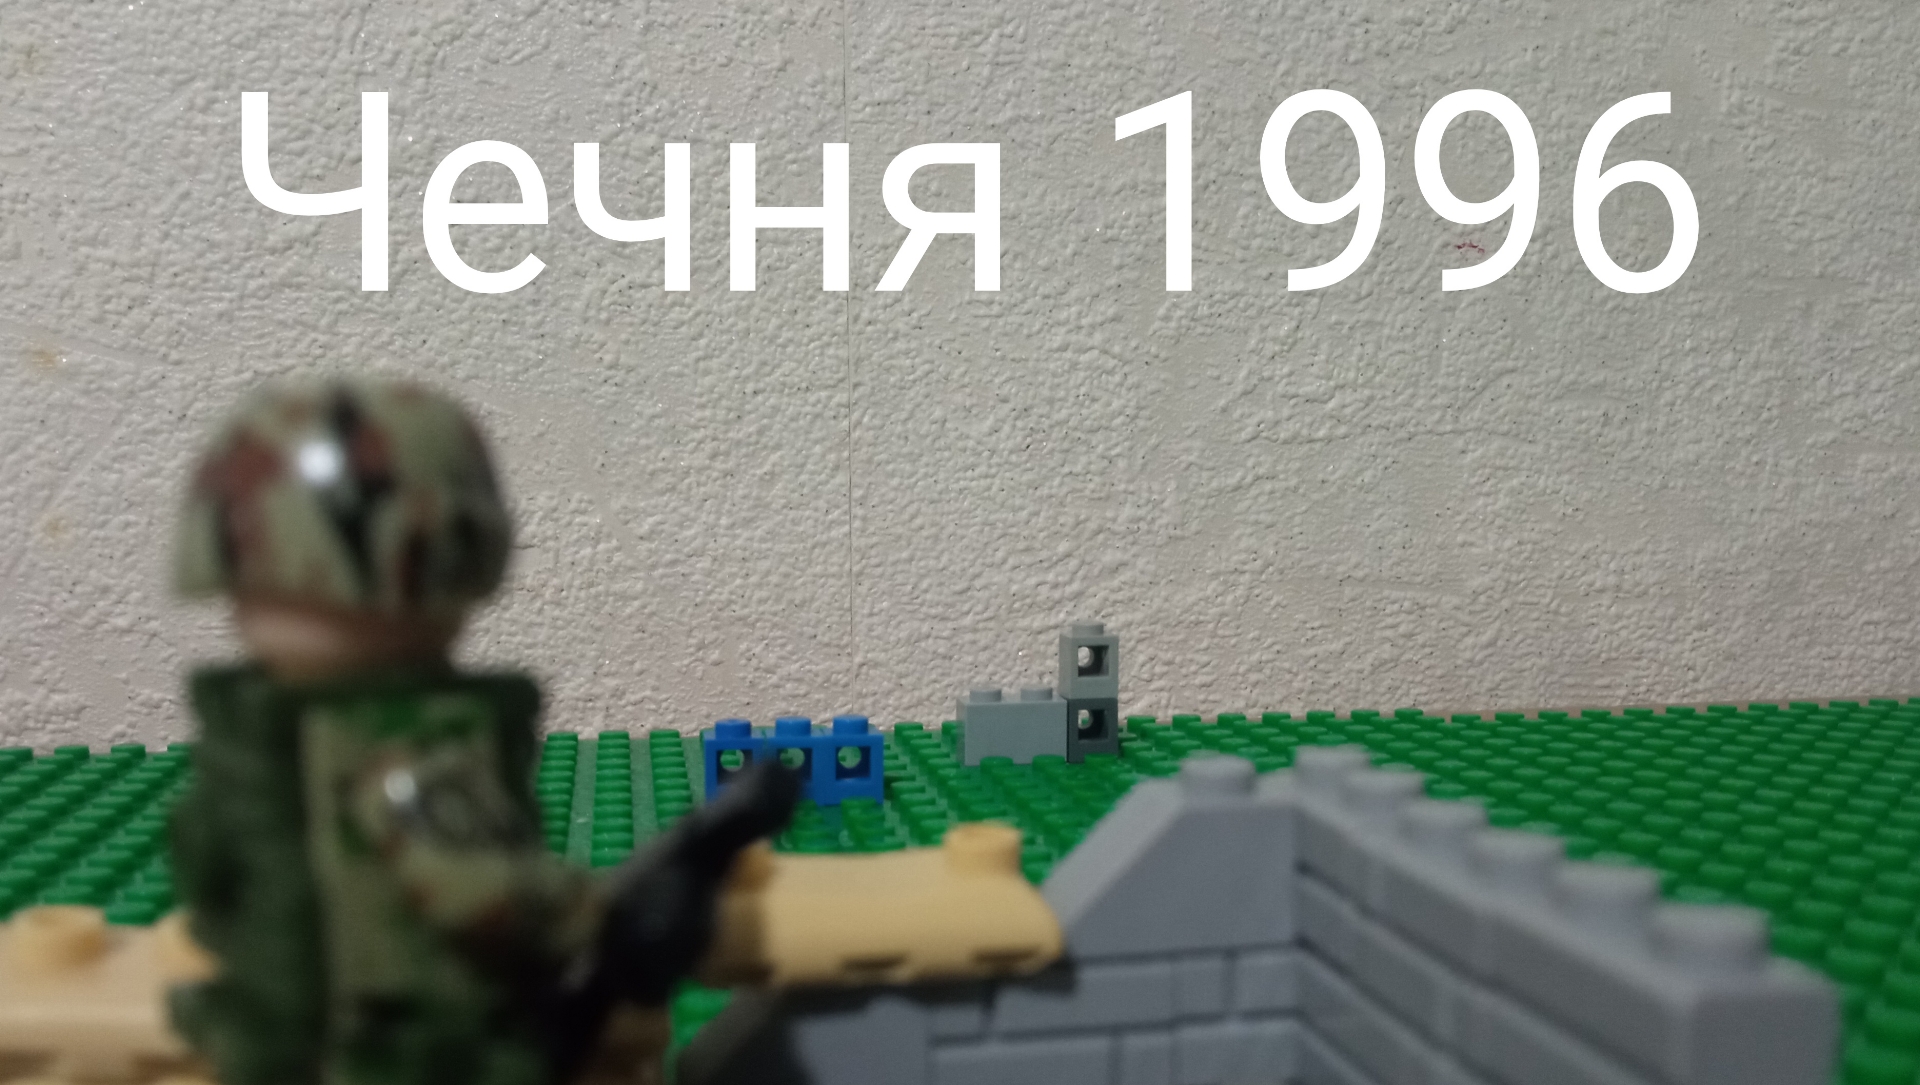 Лего анимация война в Чечне 1994-1996